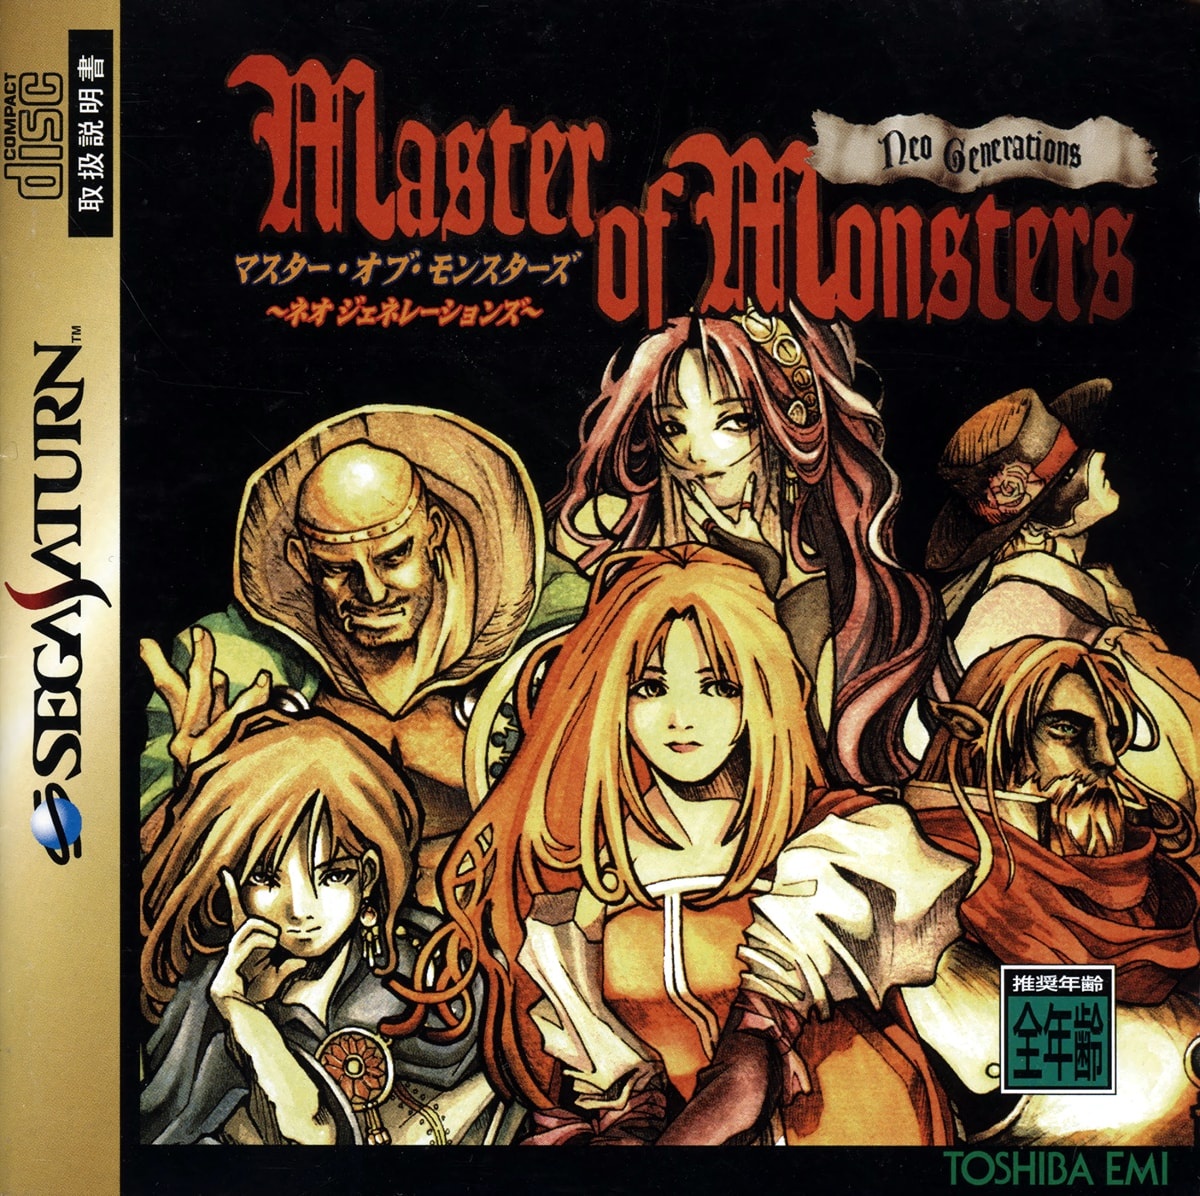 sega forever master of monsters